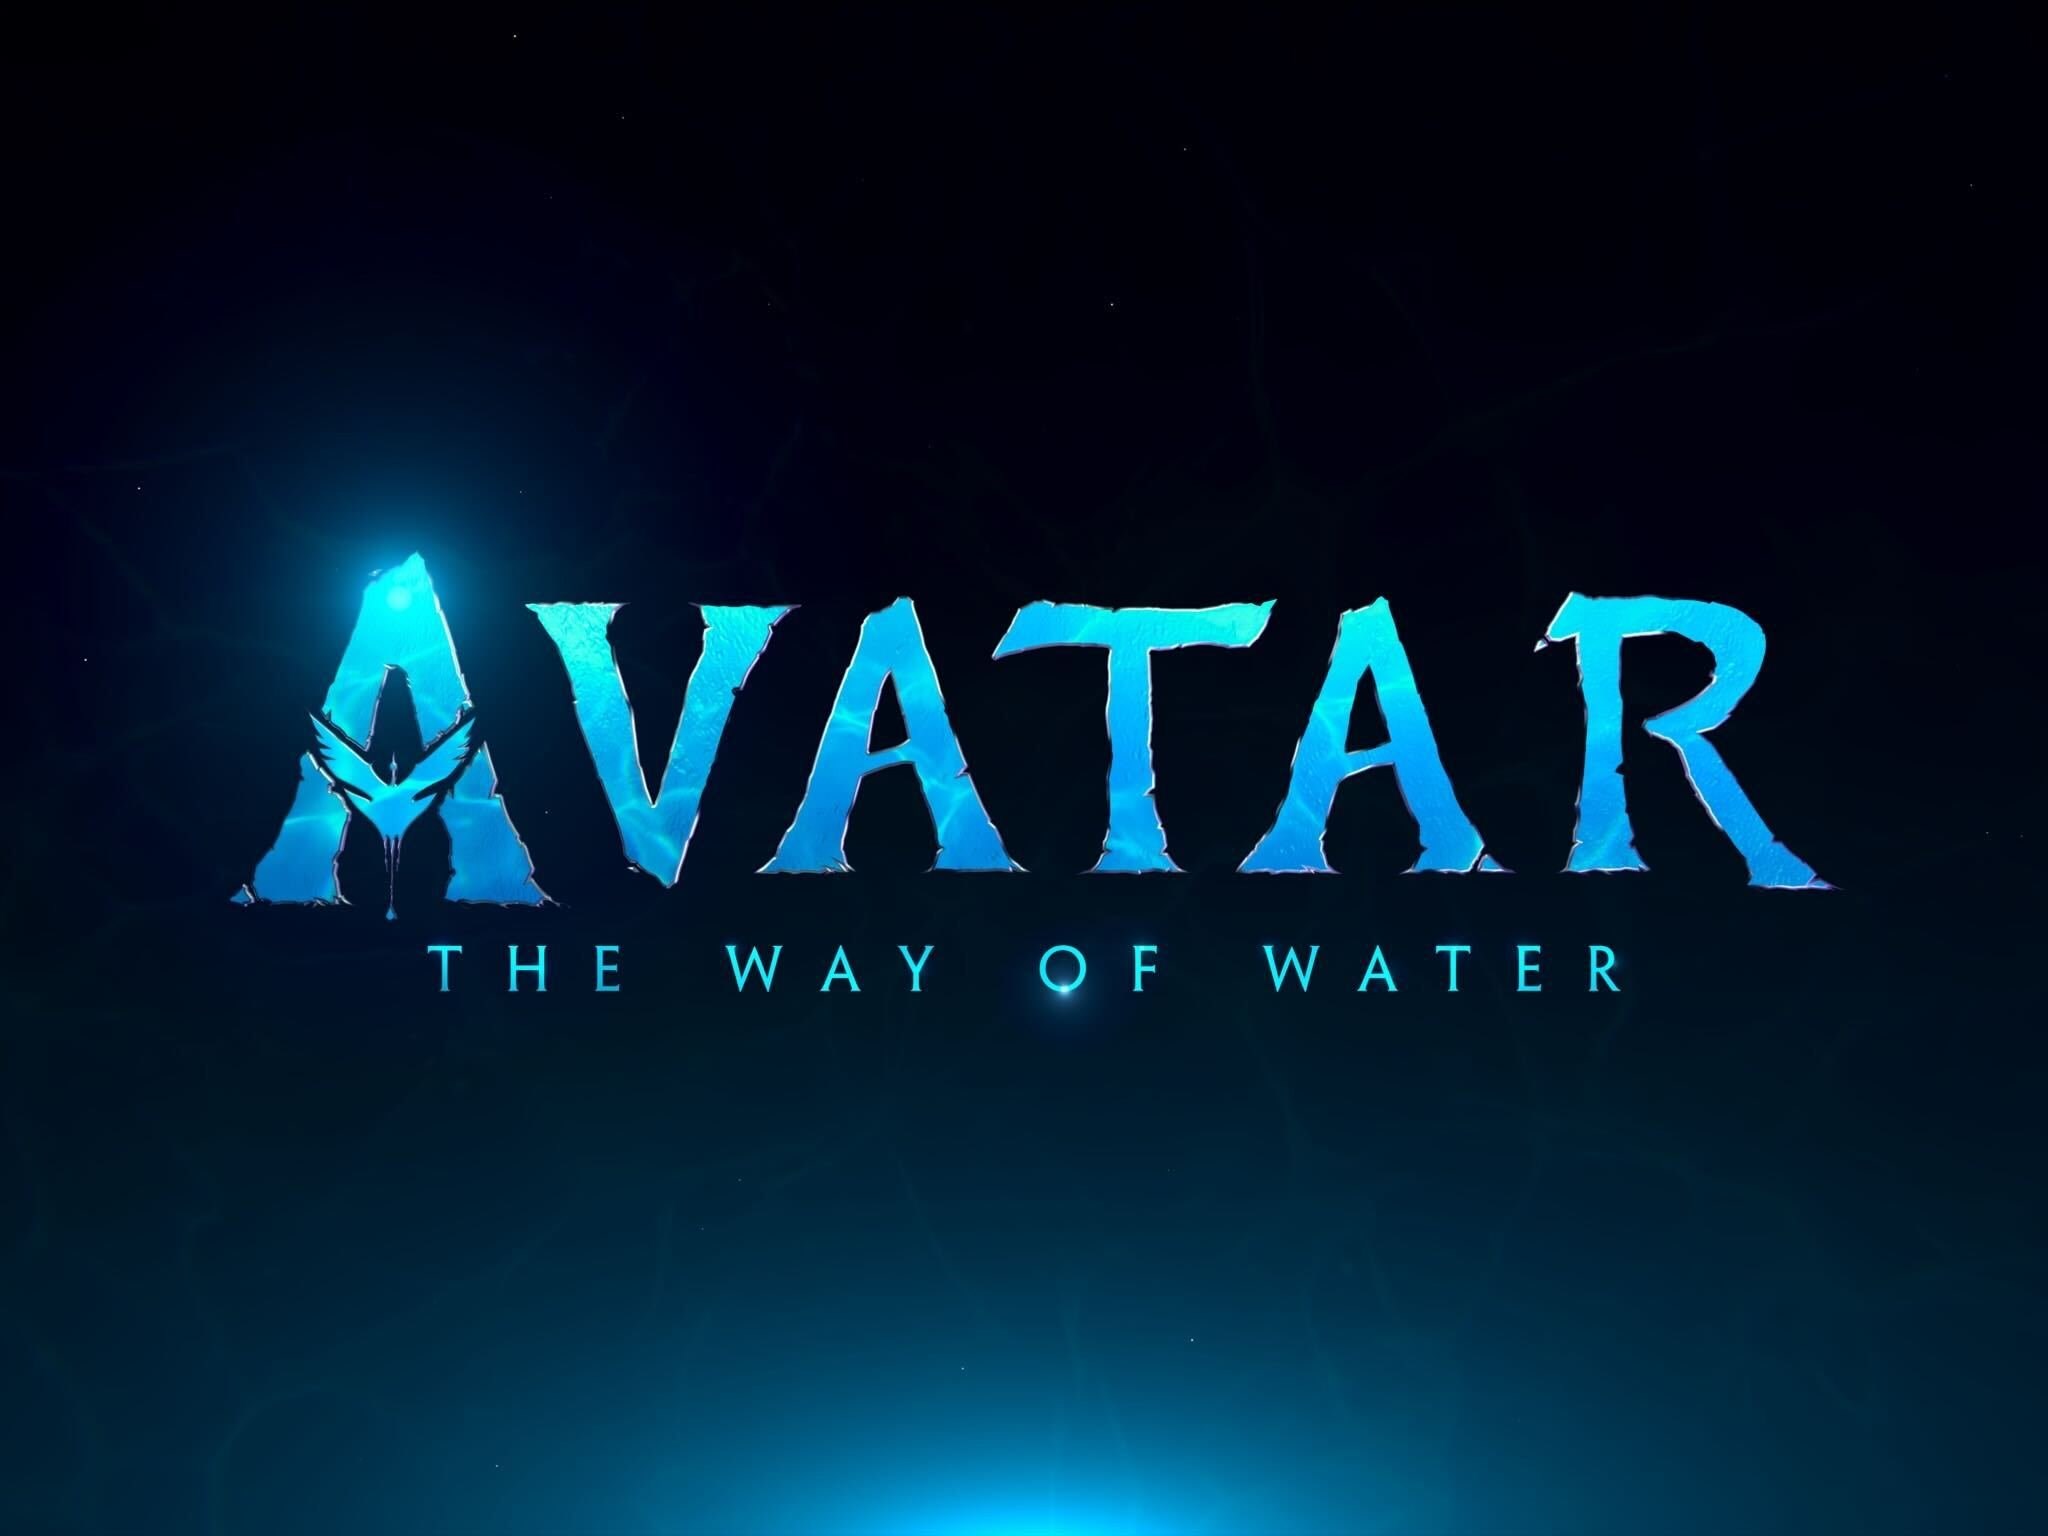 Avatar 2'nin ismi ve logosu paylaşıldı